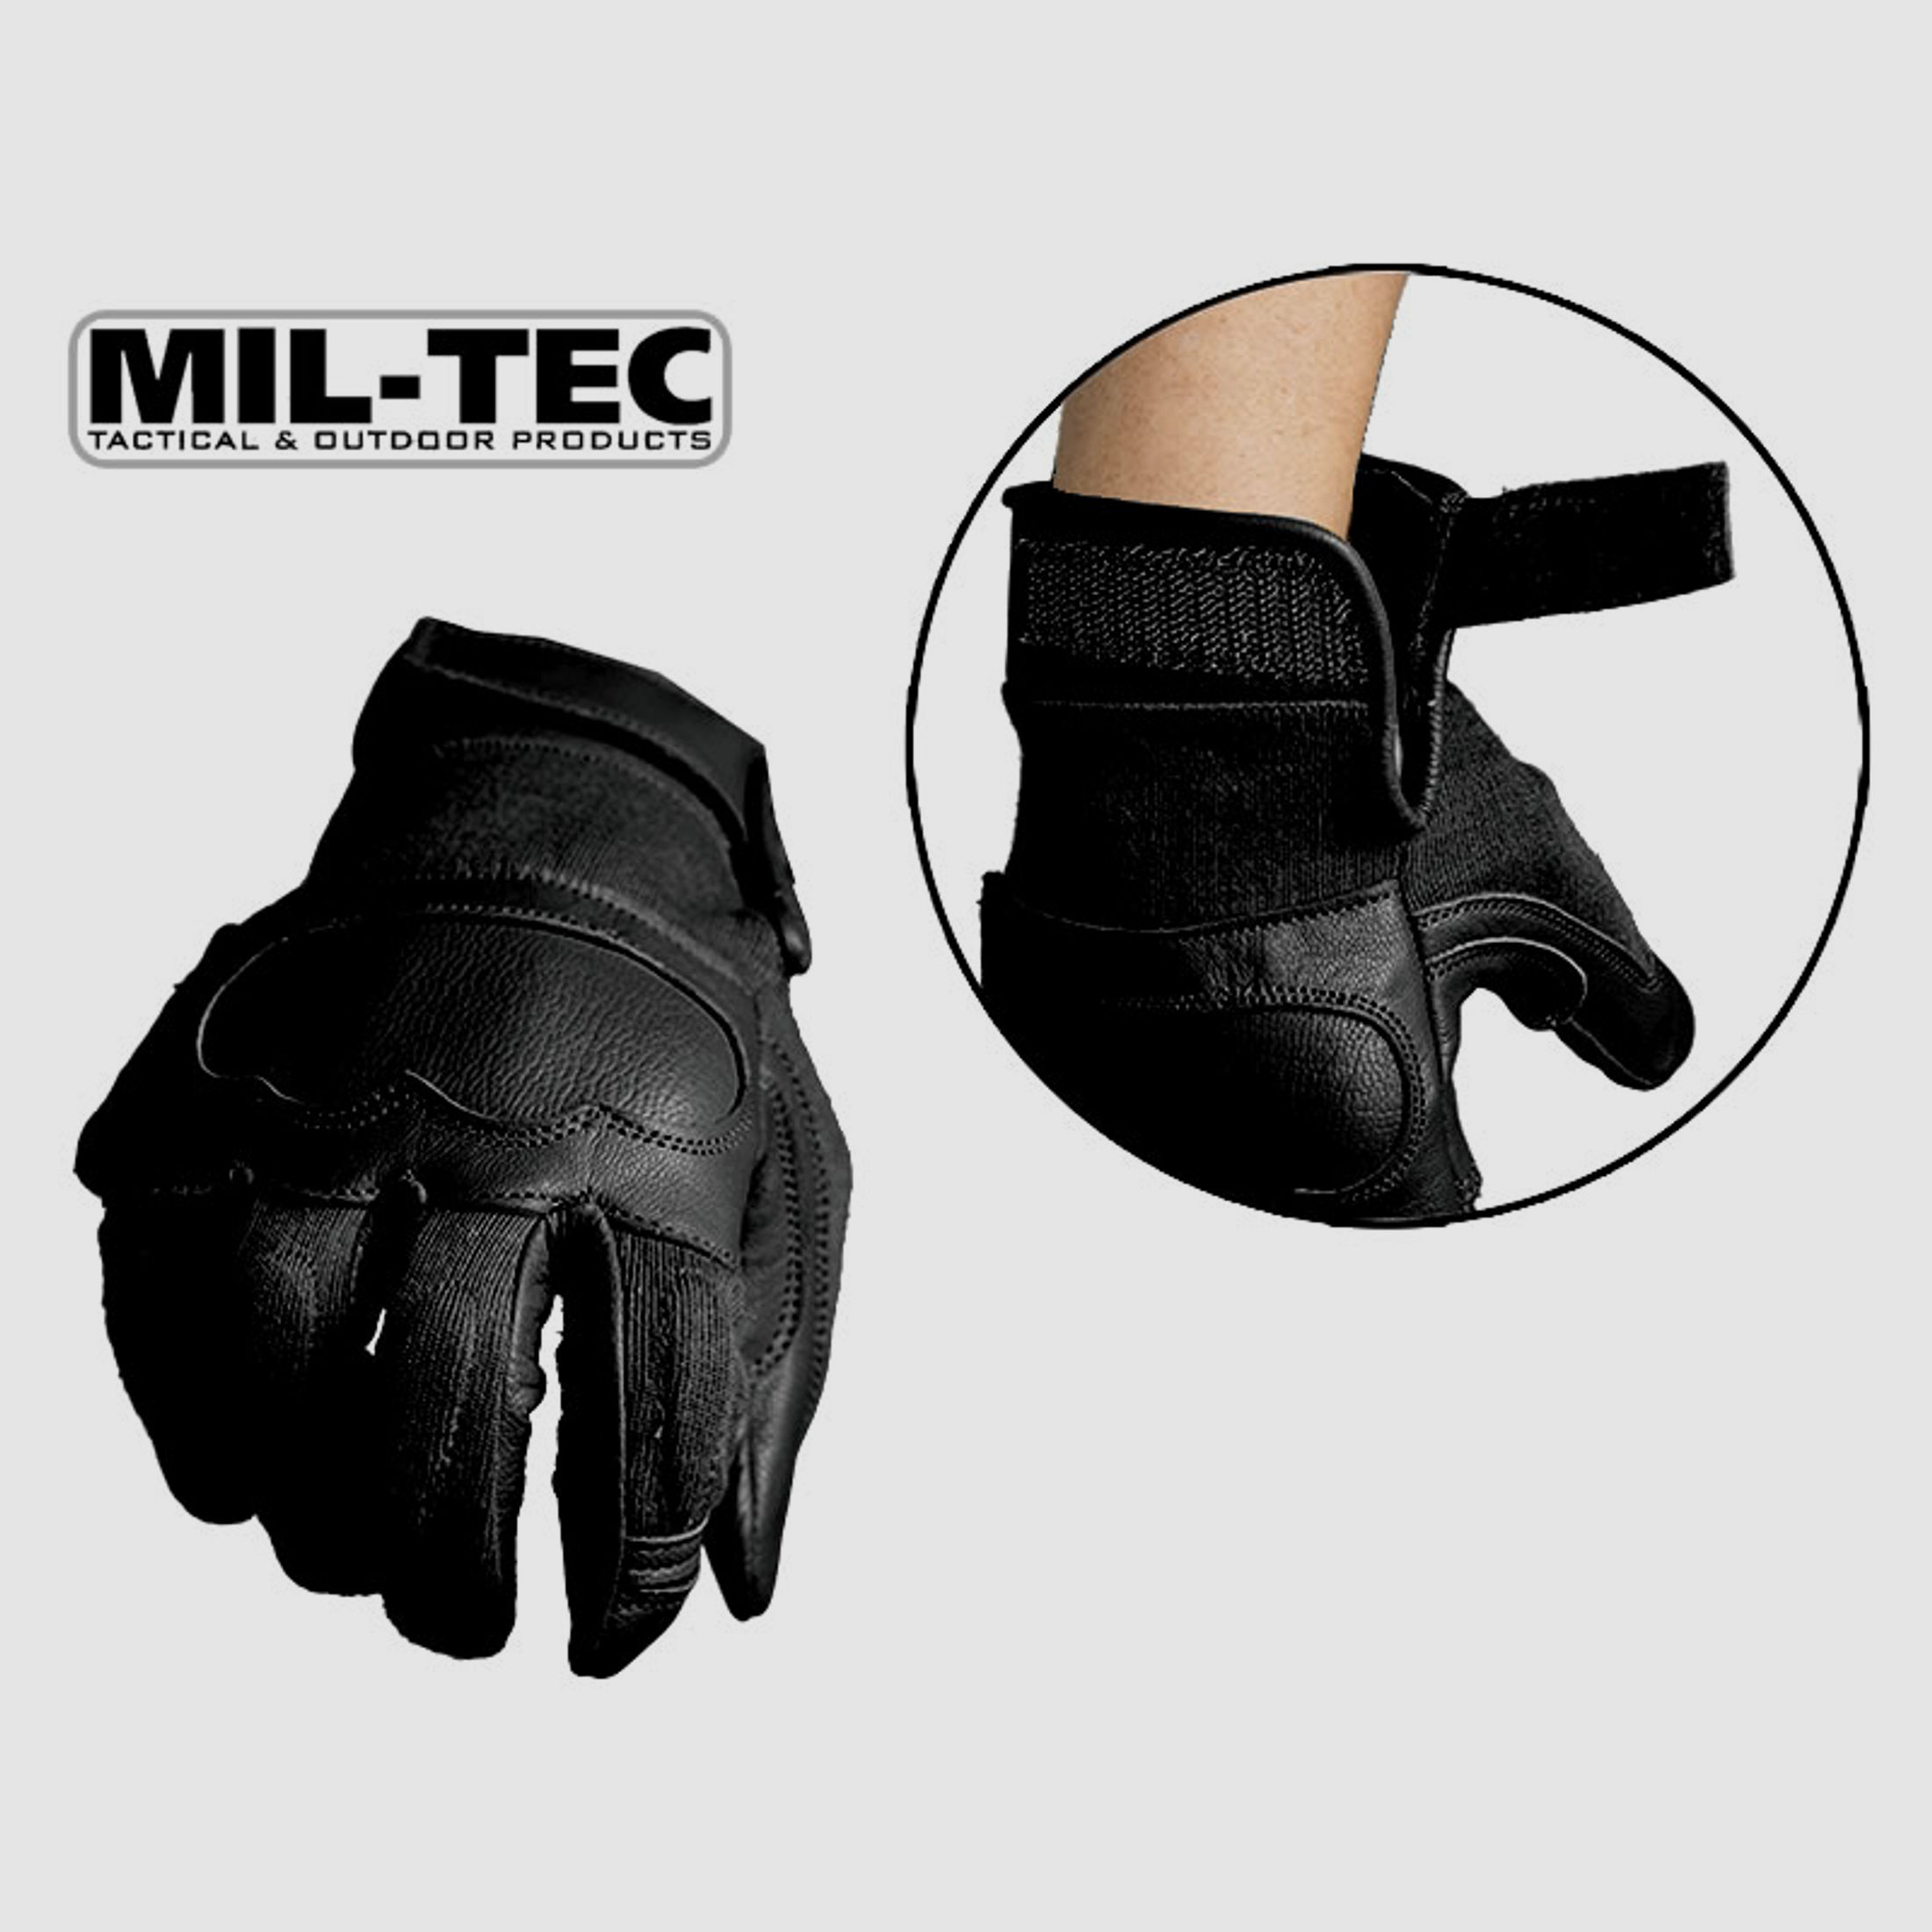 MIL-TEC taktische Lederhandschuhe BLACK, schnitthemmend, KnĂ¶chelschutz, Polsterung, Gr. M